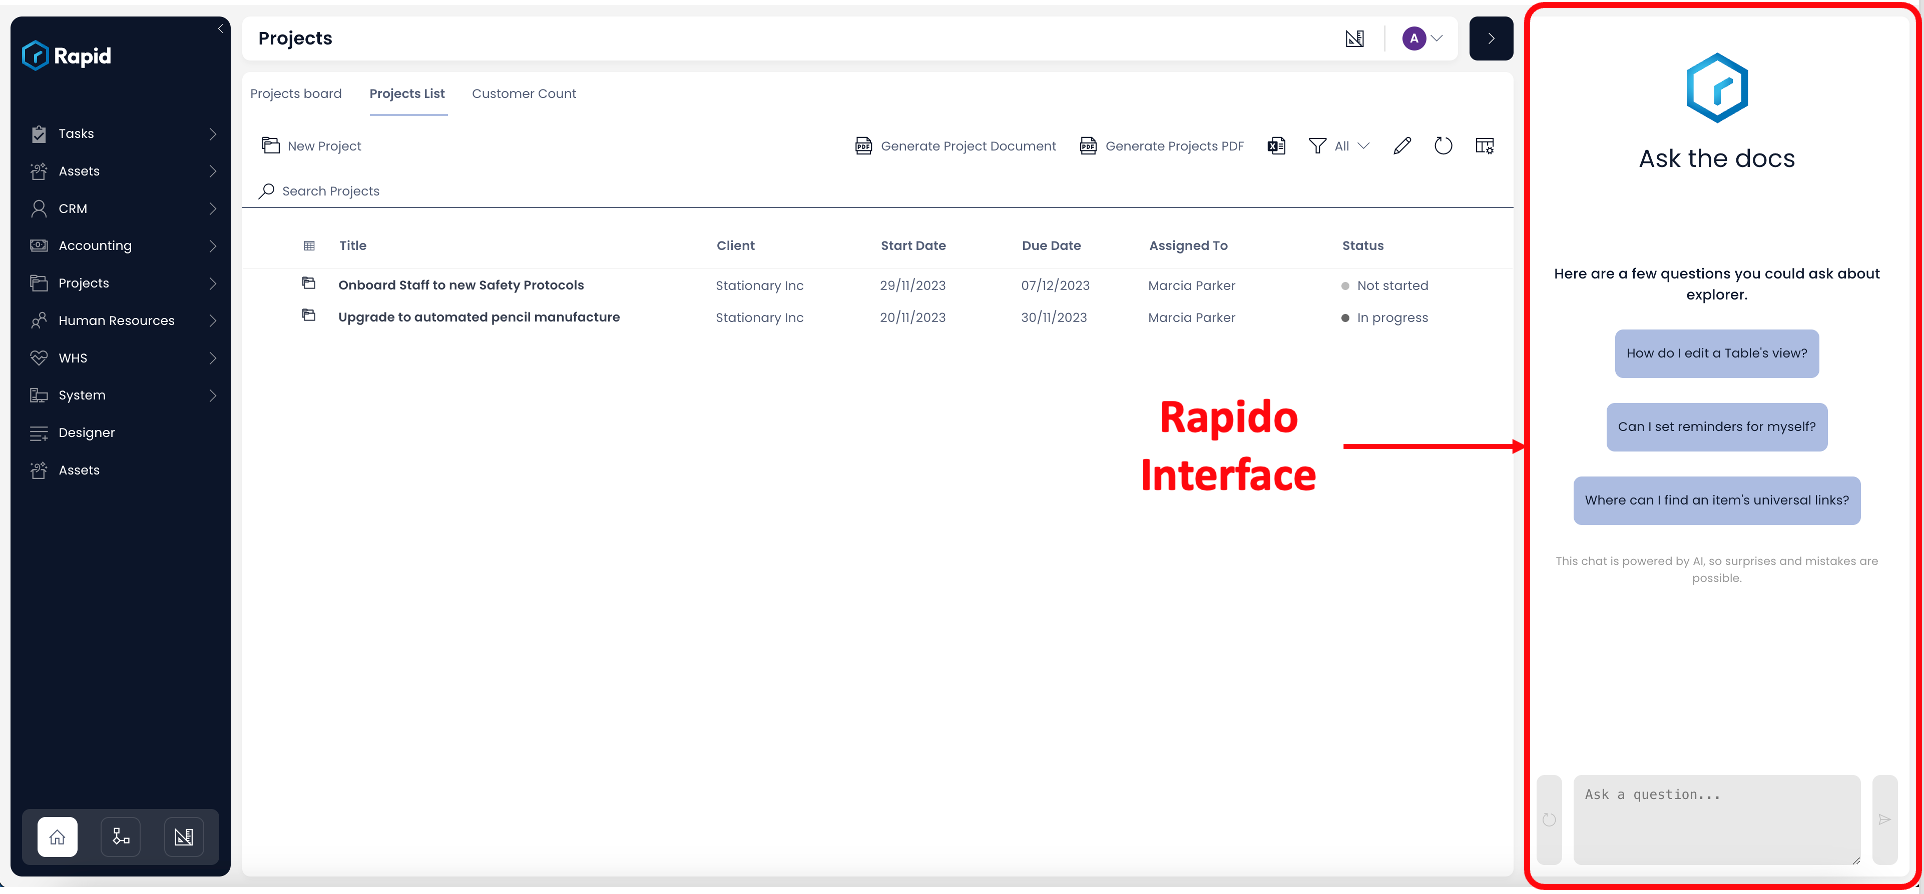 Image showing Rapido Interface